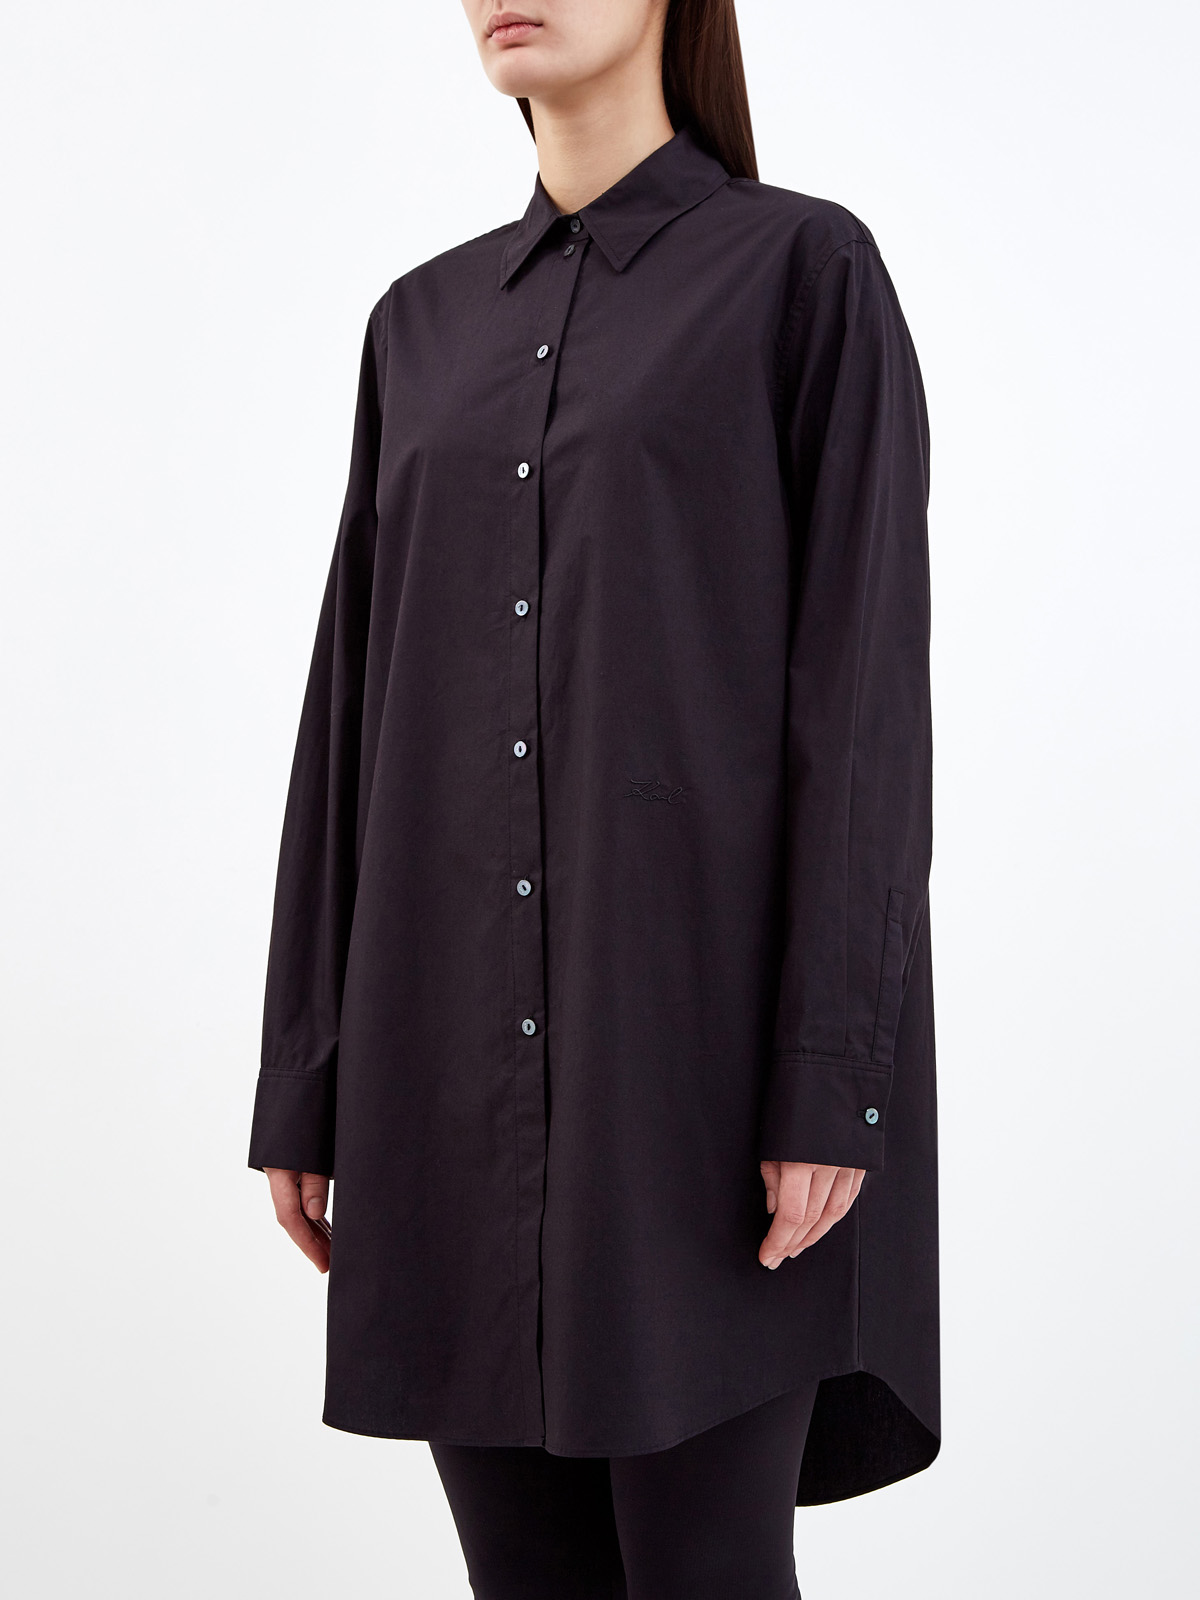 Удлиненная рубашка K/Ikonik с макро-аппликацией из стразов KARL LAGERFELD, цвет черный, размер XS;S;M Удлиненная рубашка K/Ikonik с макро-аппликацией из стразов - фото 3